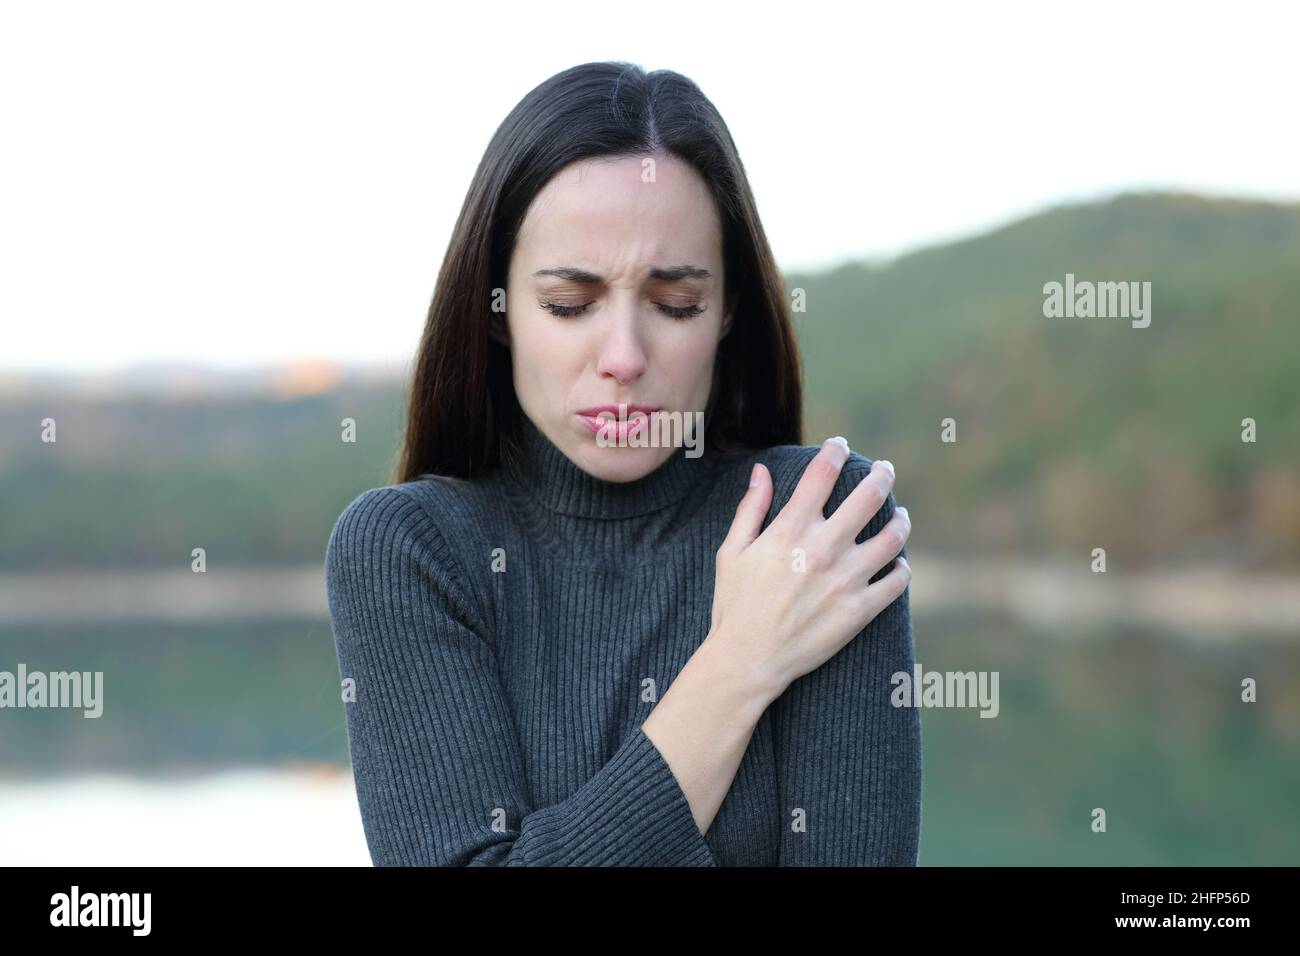 Vue de face portrait d'une femme qui se fait froid en hiver dans un lac Banque D'Images